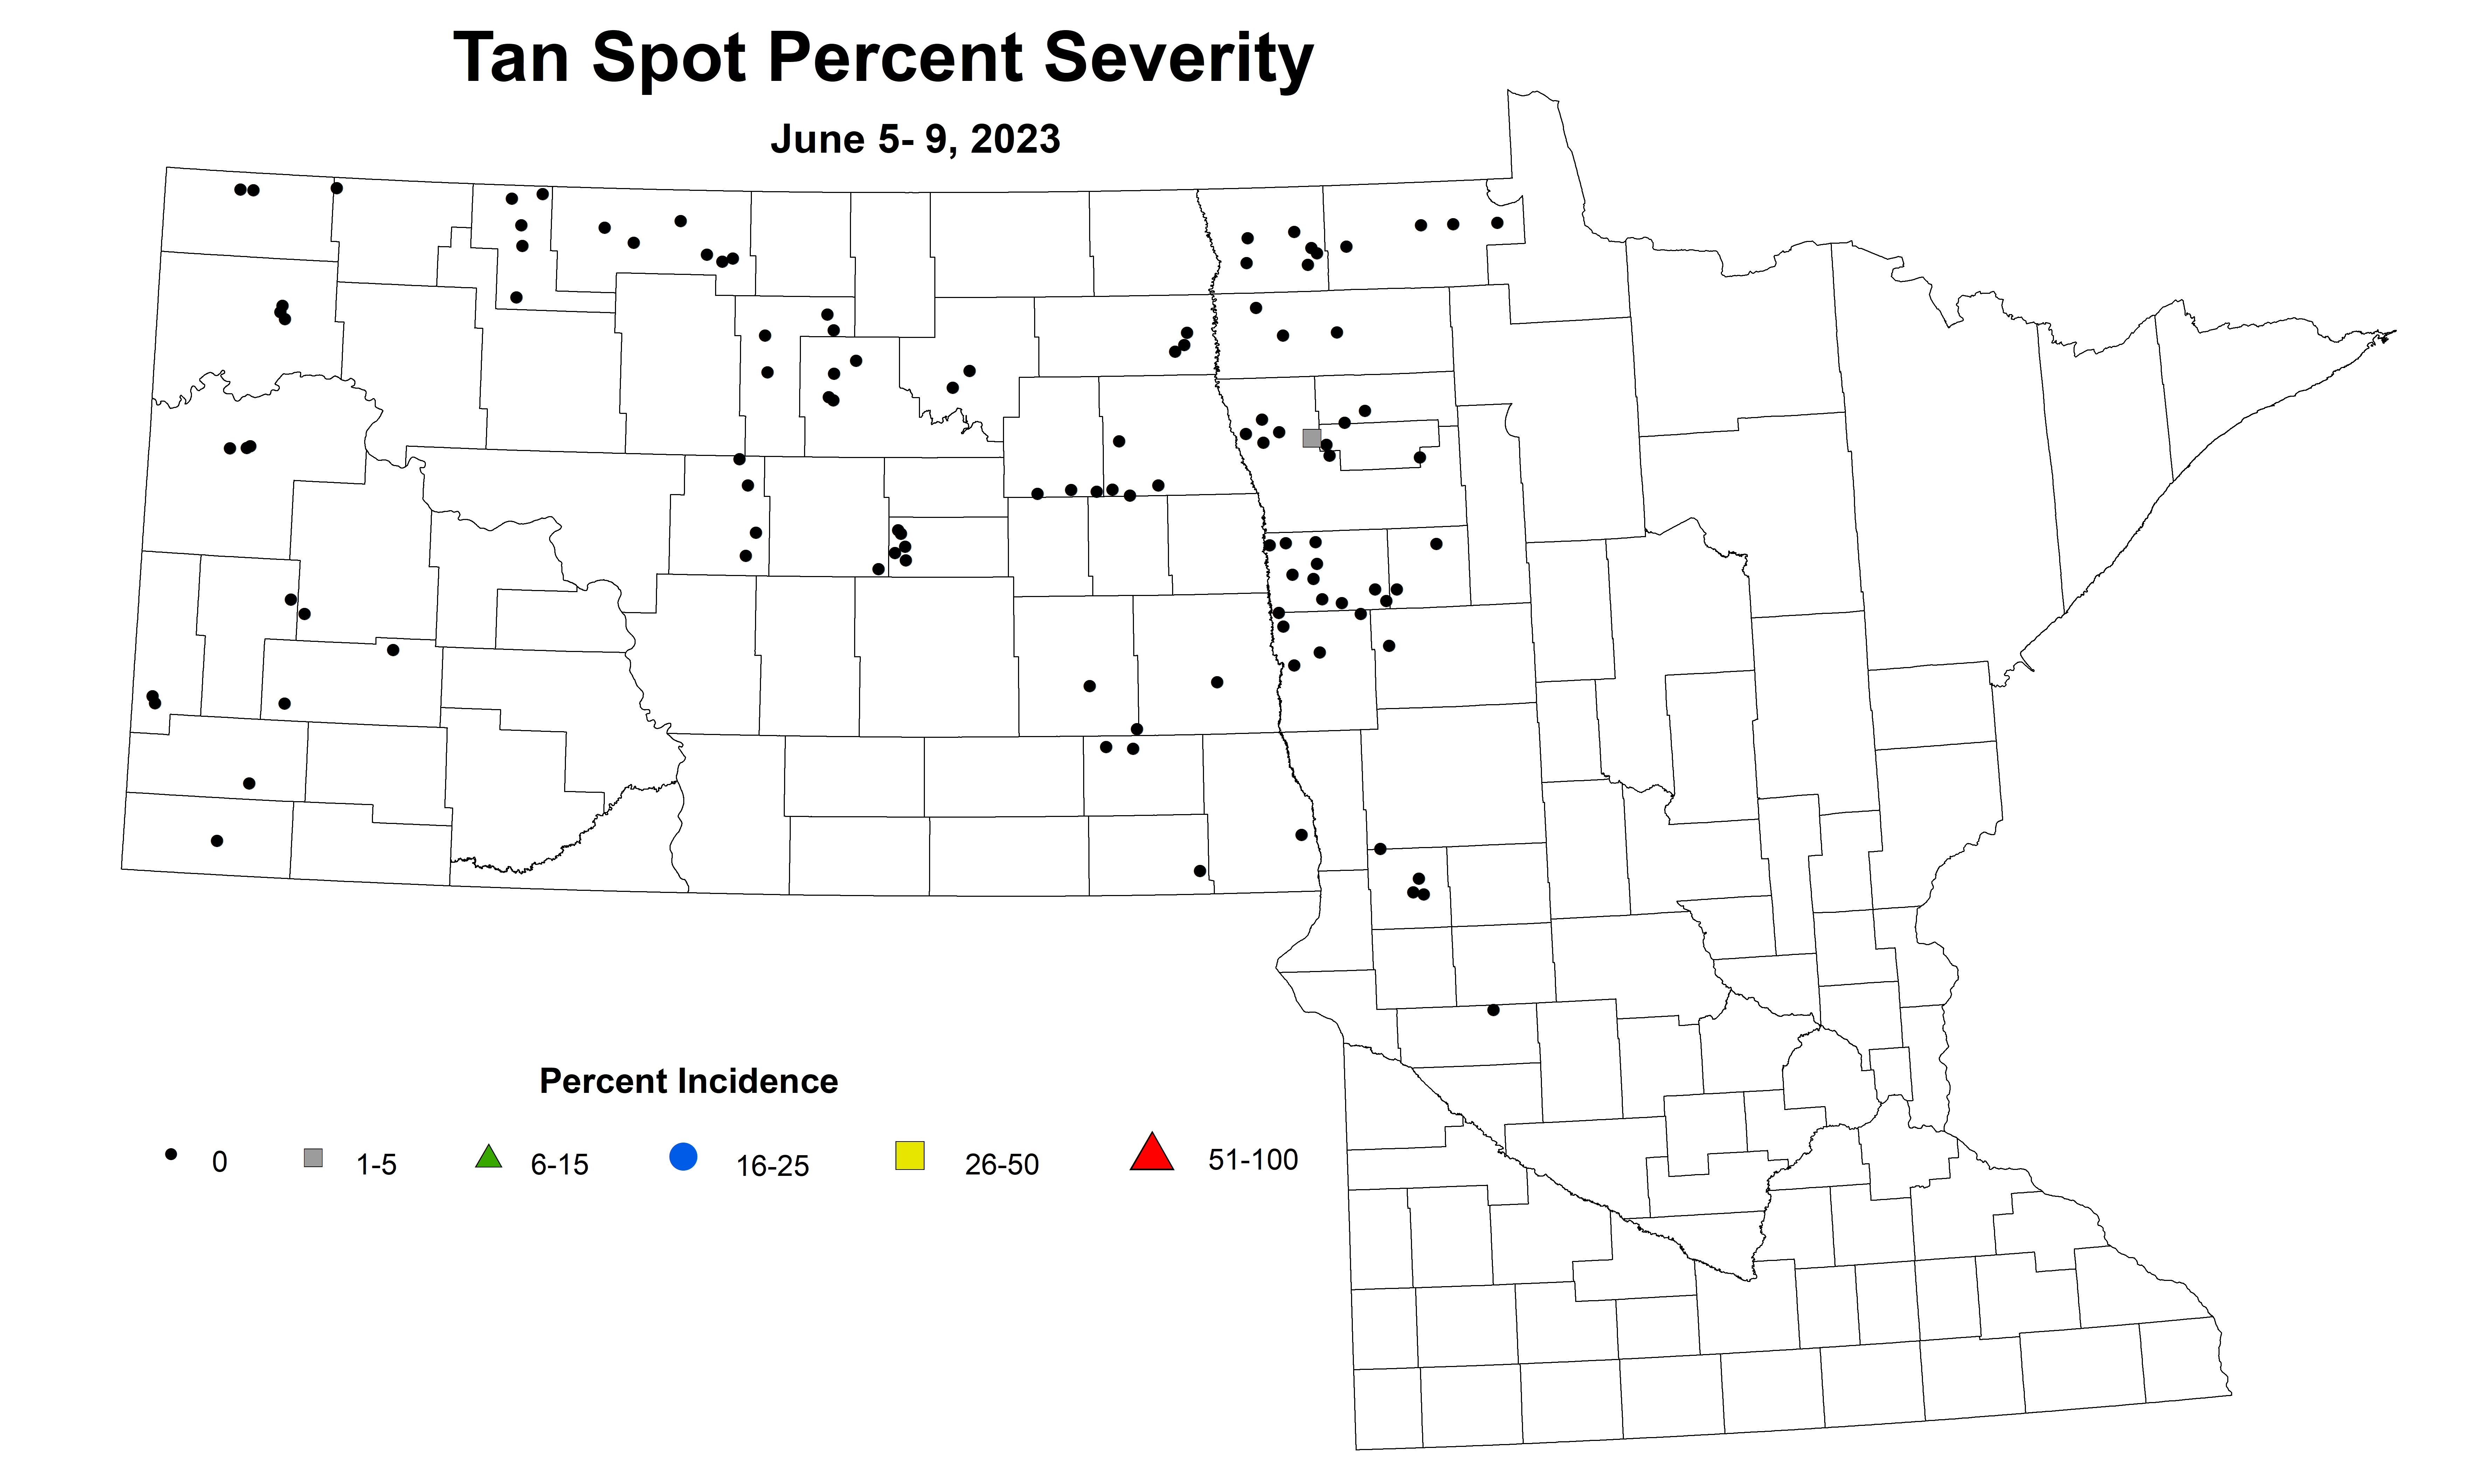 wheat tan spot percent severity June 5-9 2023